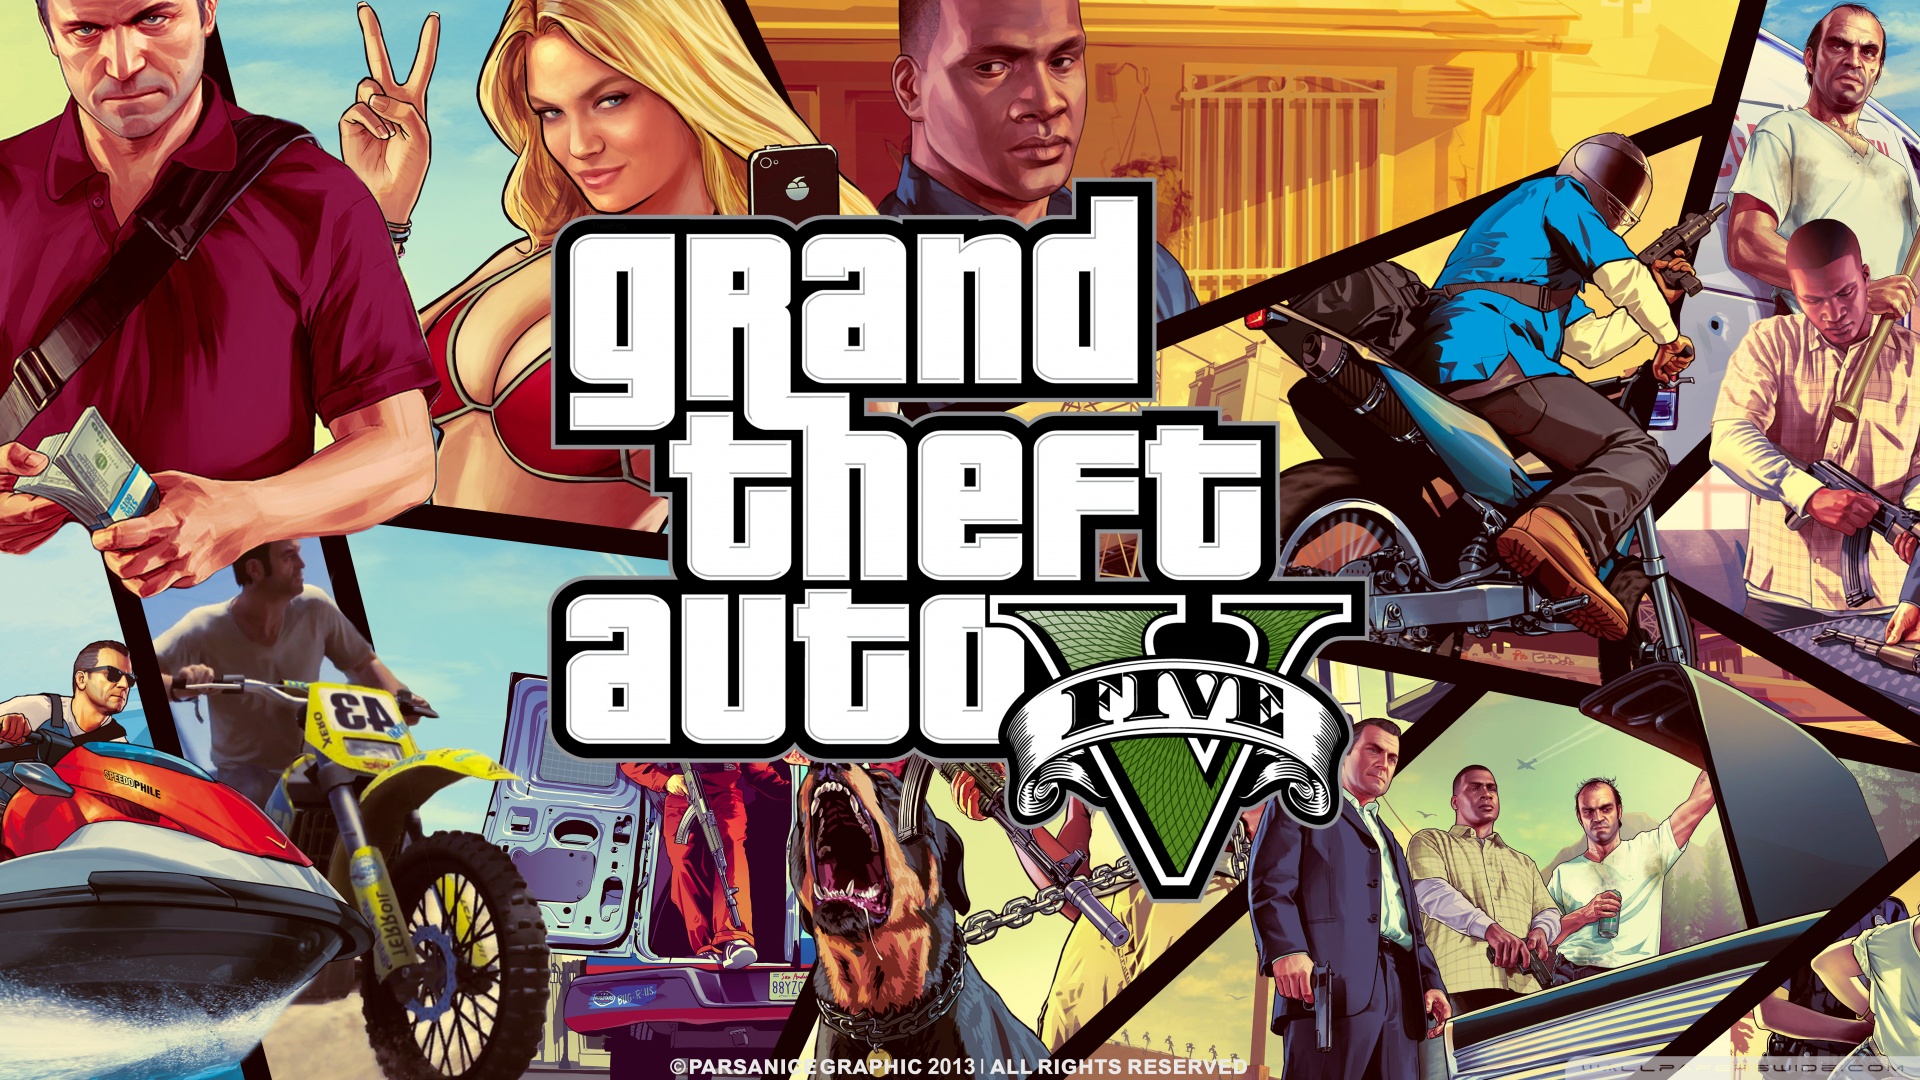 Grand Theft Auto V 9 Wallpaper 1920×1080 - Gta V Wallpaper 1080p - HD Wallpaper 